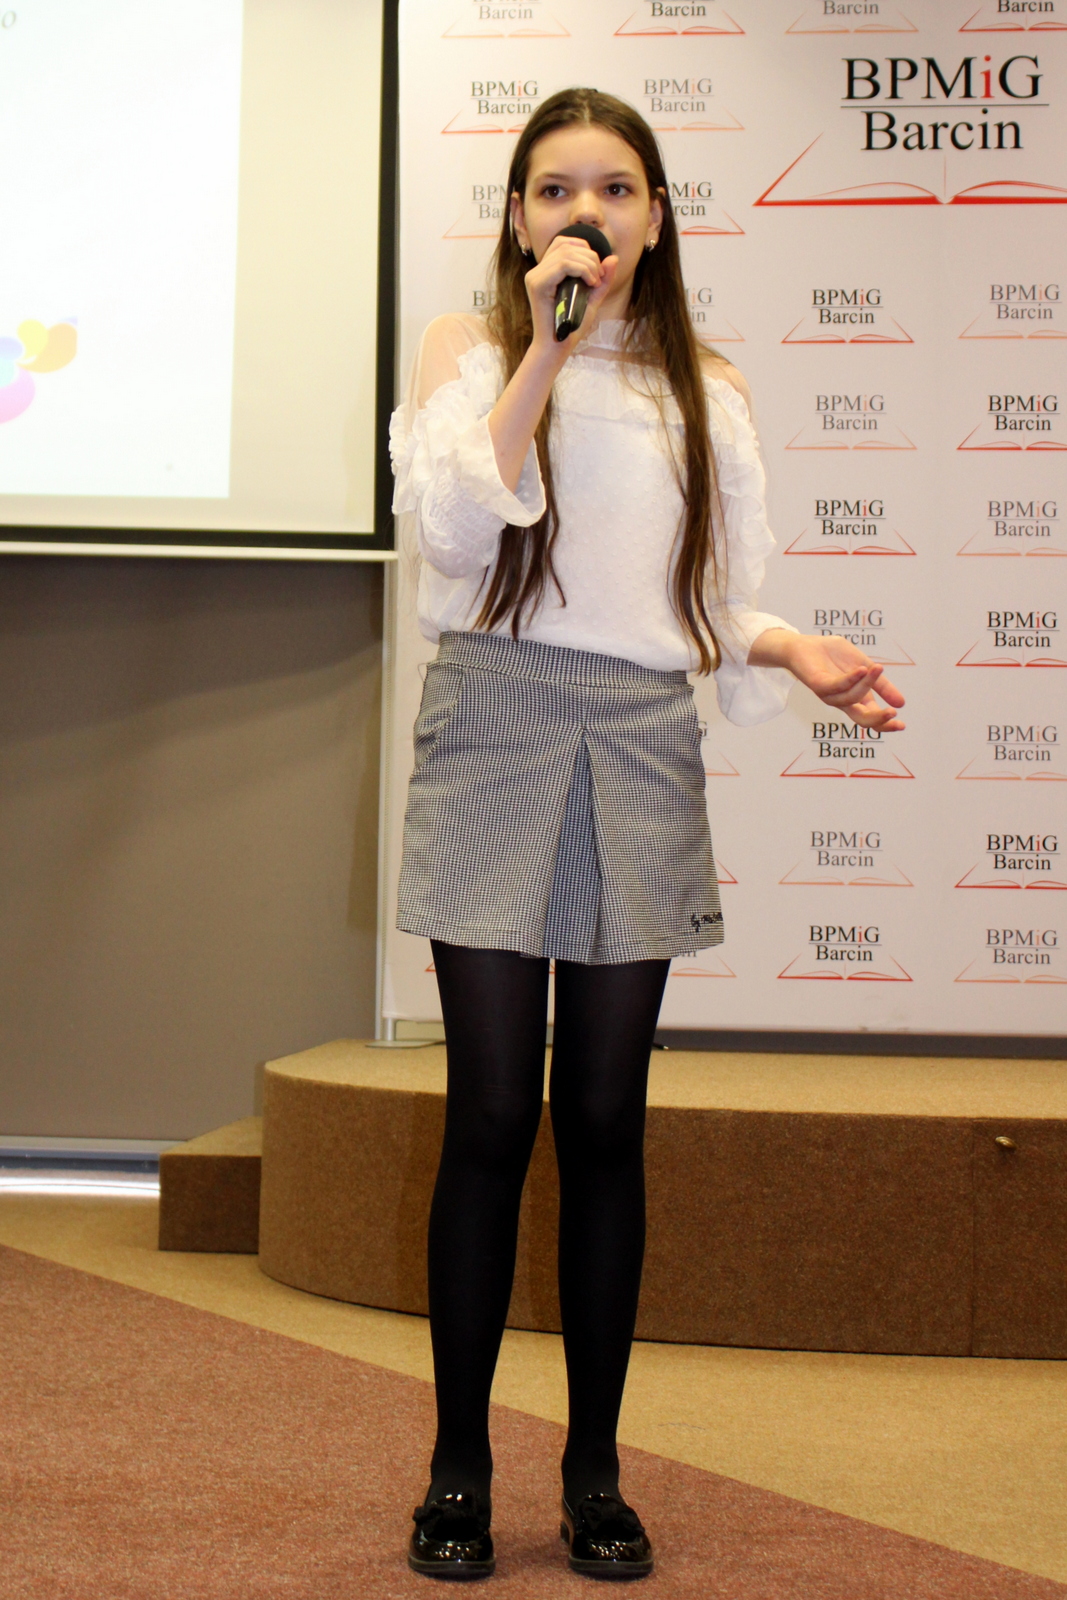 Uczestniczka konkursu, dziewczyna z ciemnymi długimi włosami ubrana w białą bluzkę, krótką spódniczkę w drobną biało czarną krate, czarne rajstopy i czarne błyszczące buty